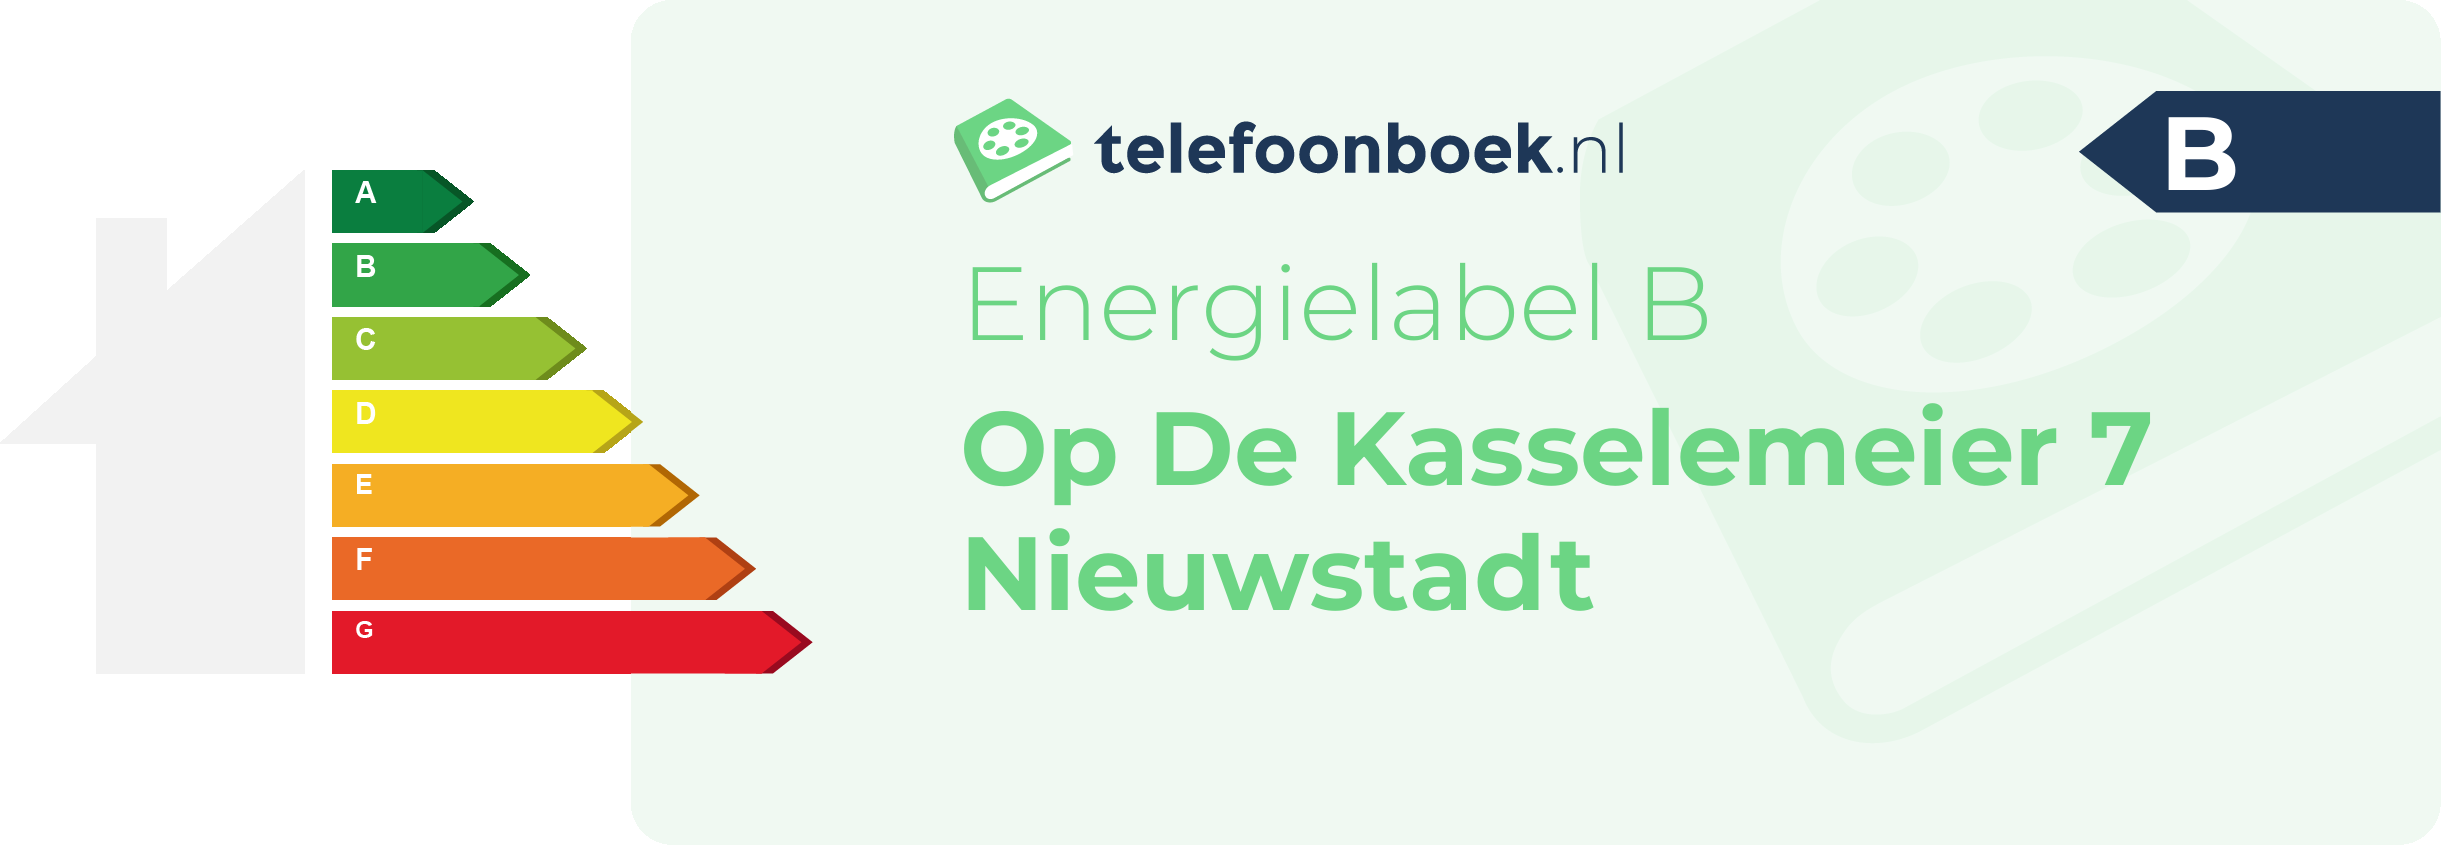 Energielabel Op De Kasselemeier 7 Nieuwstadt